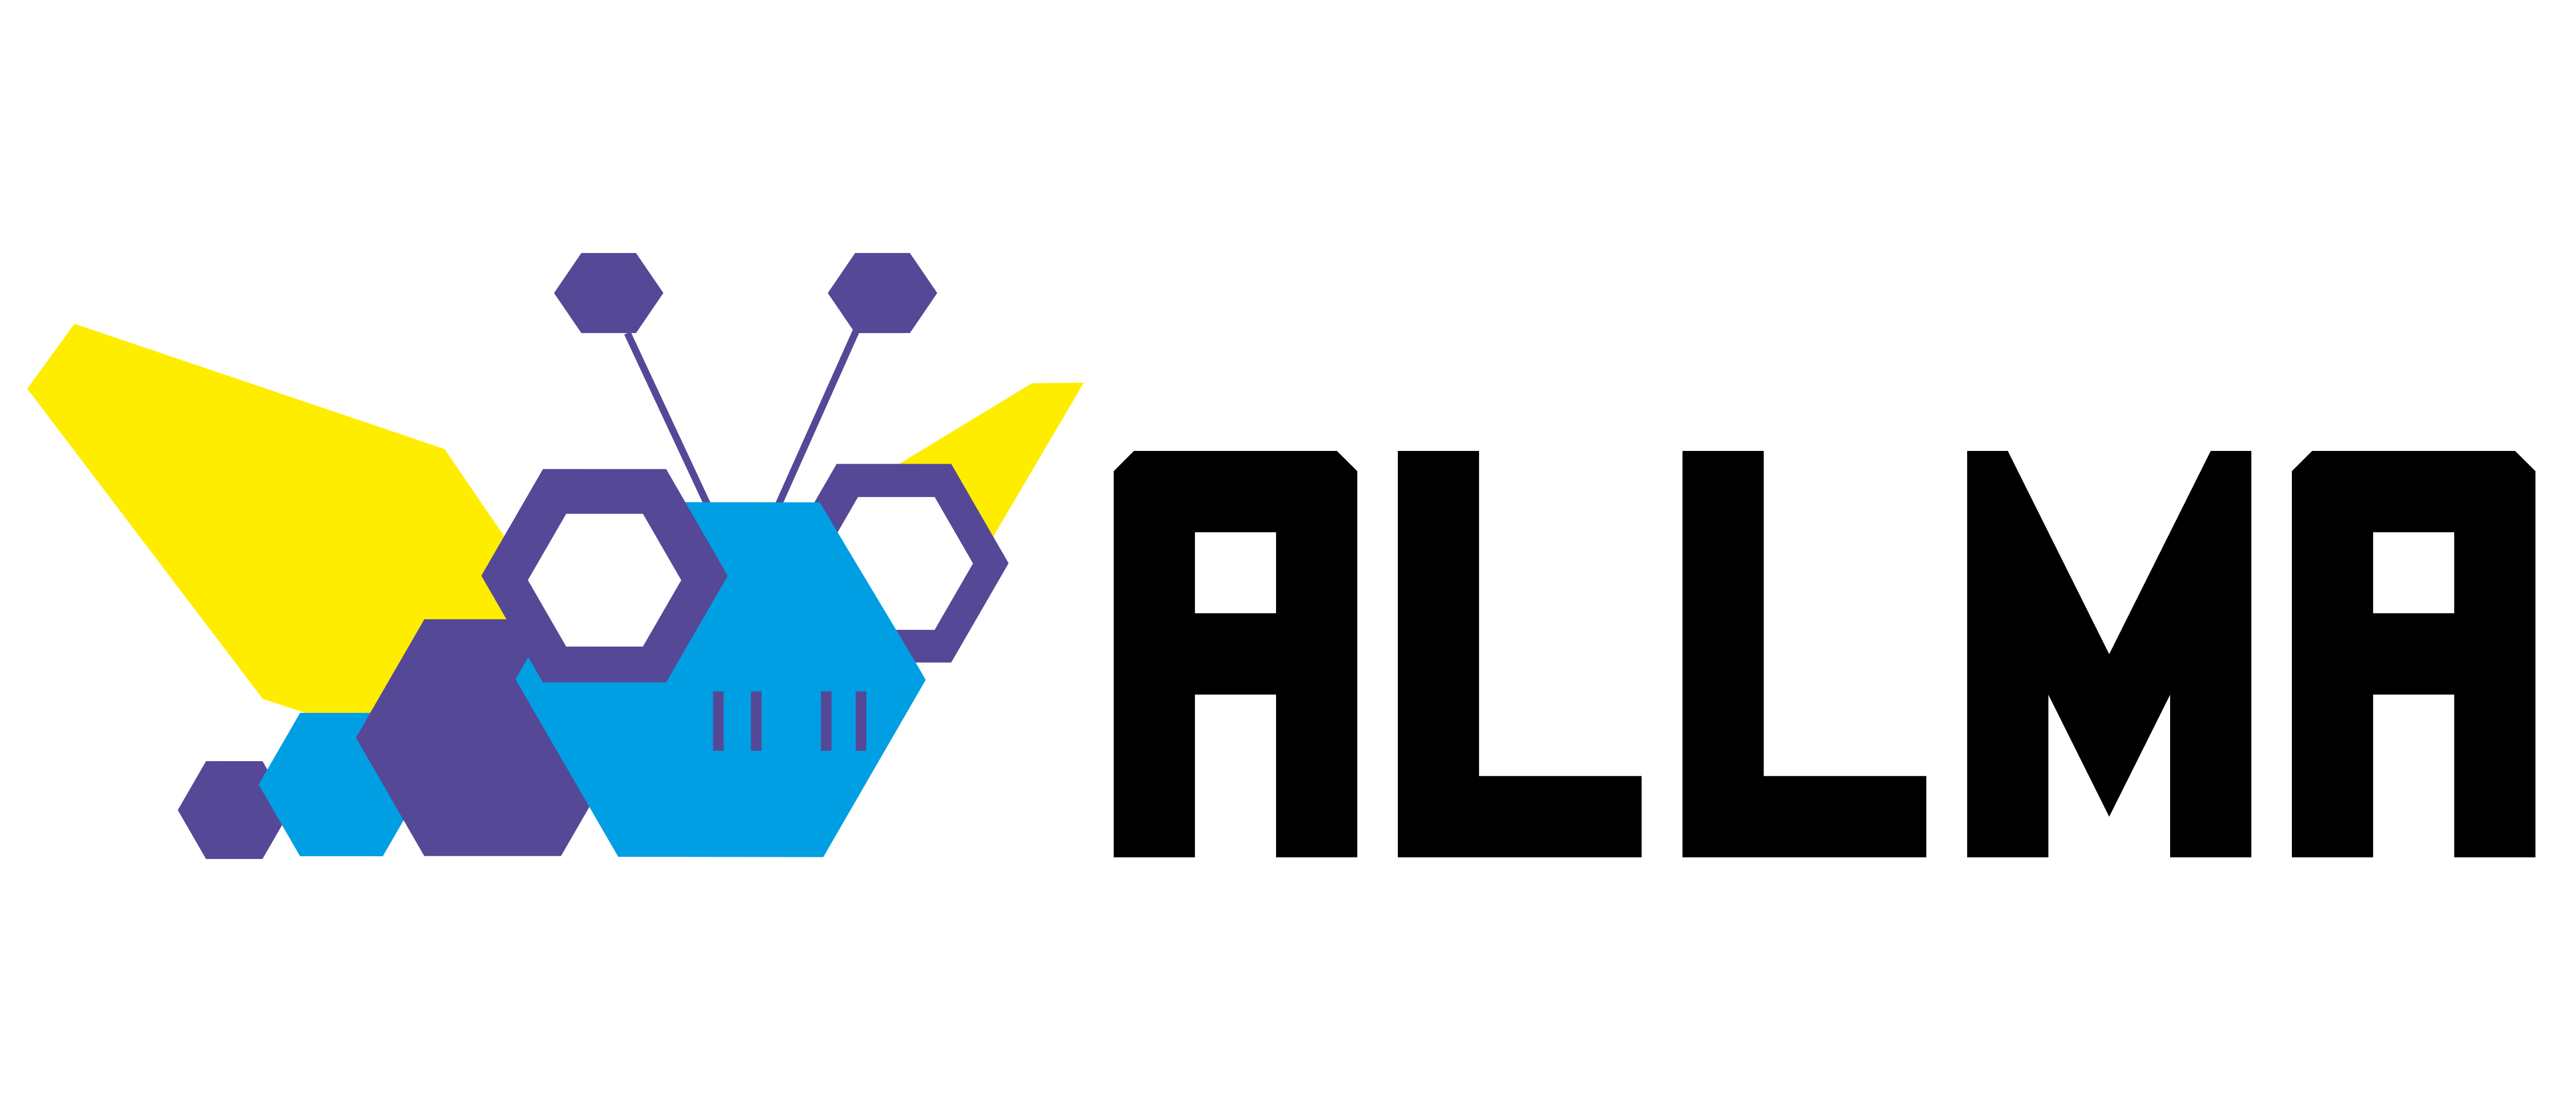 Allma logo